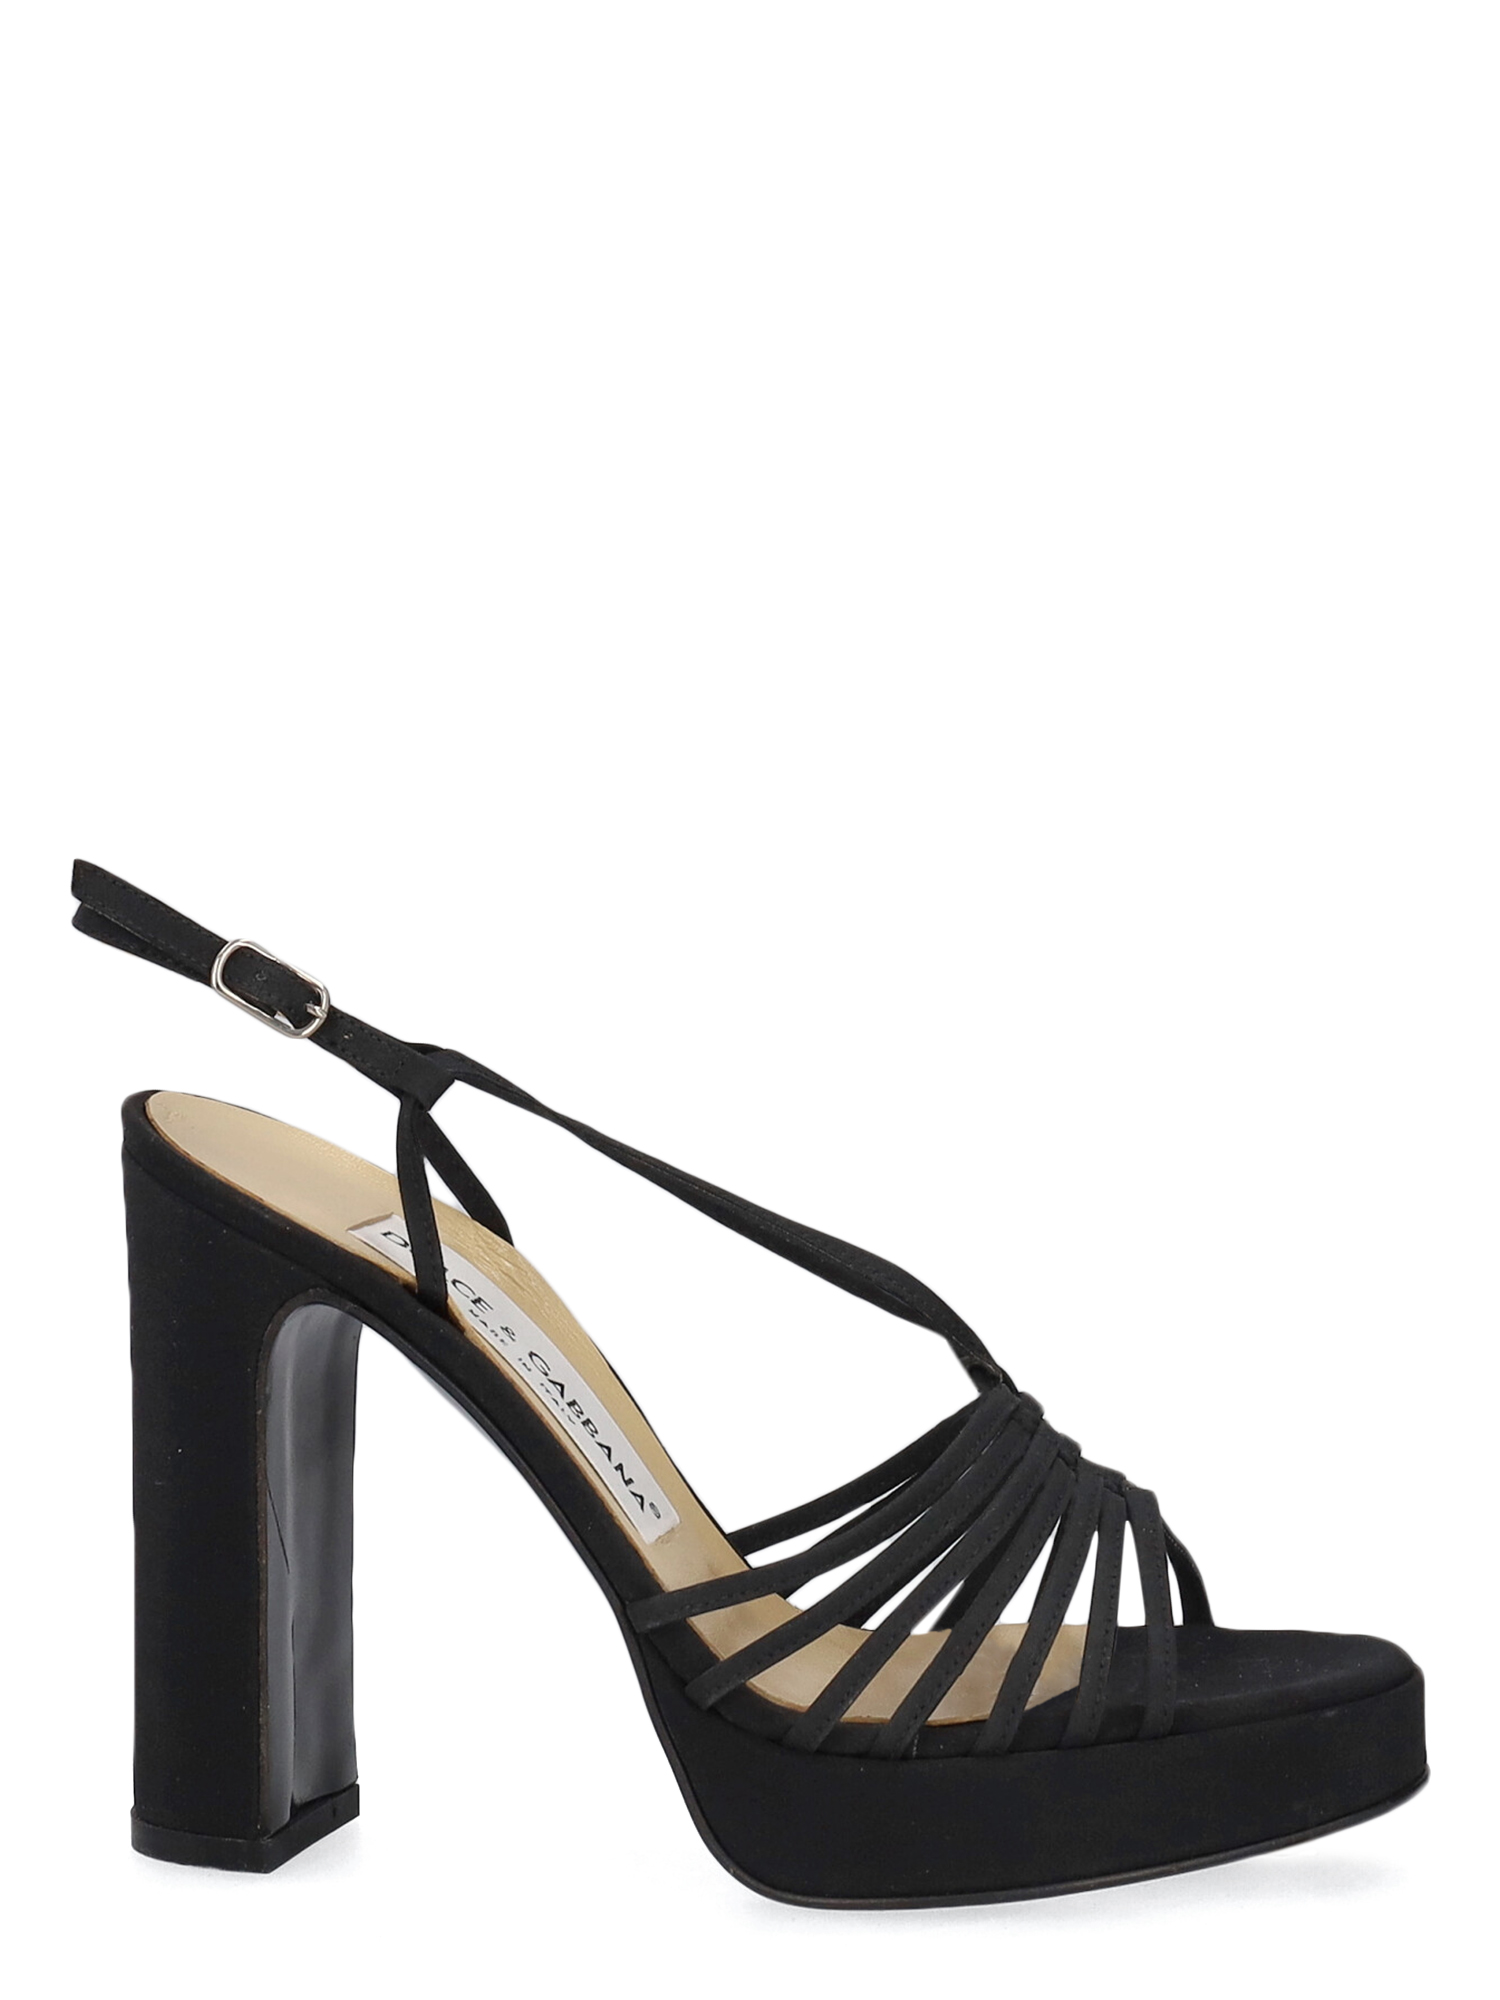 Sandales Pour Femme - Dolce & Gabbana - En Fabric Black - Taille: IT 36 - EU 36